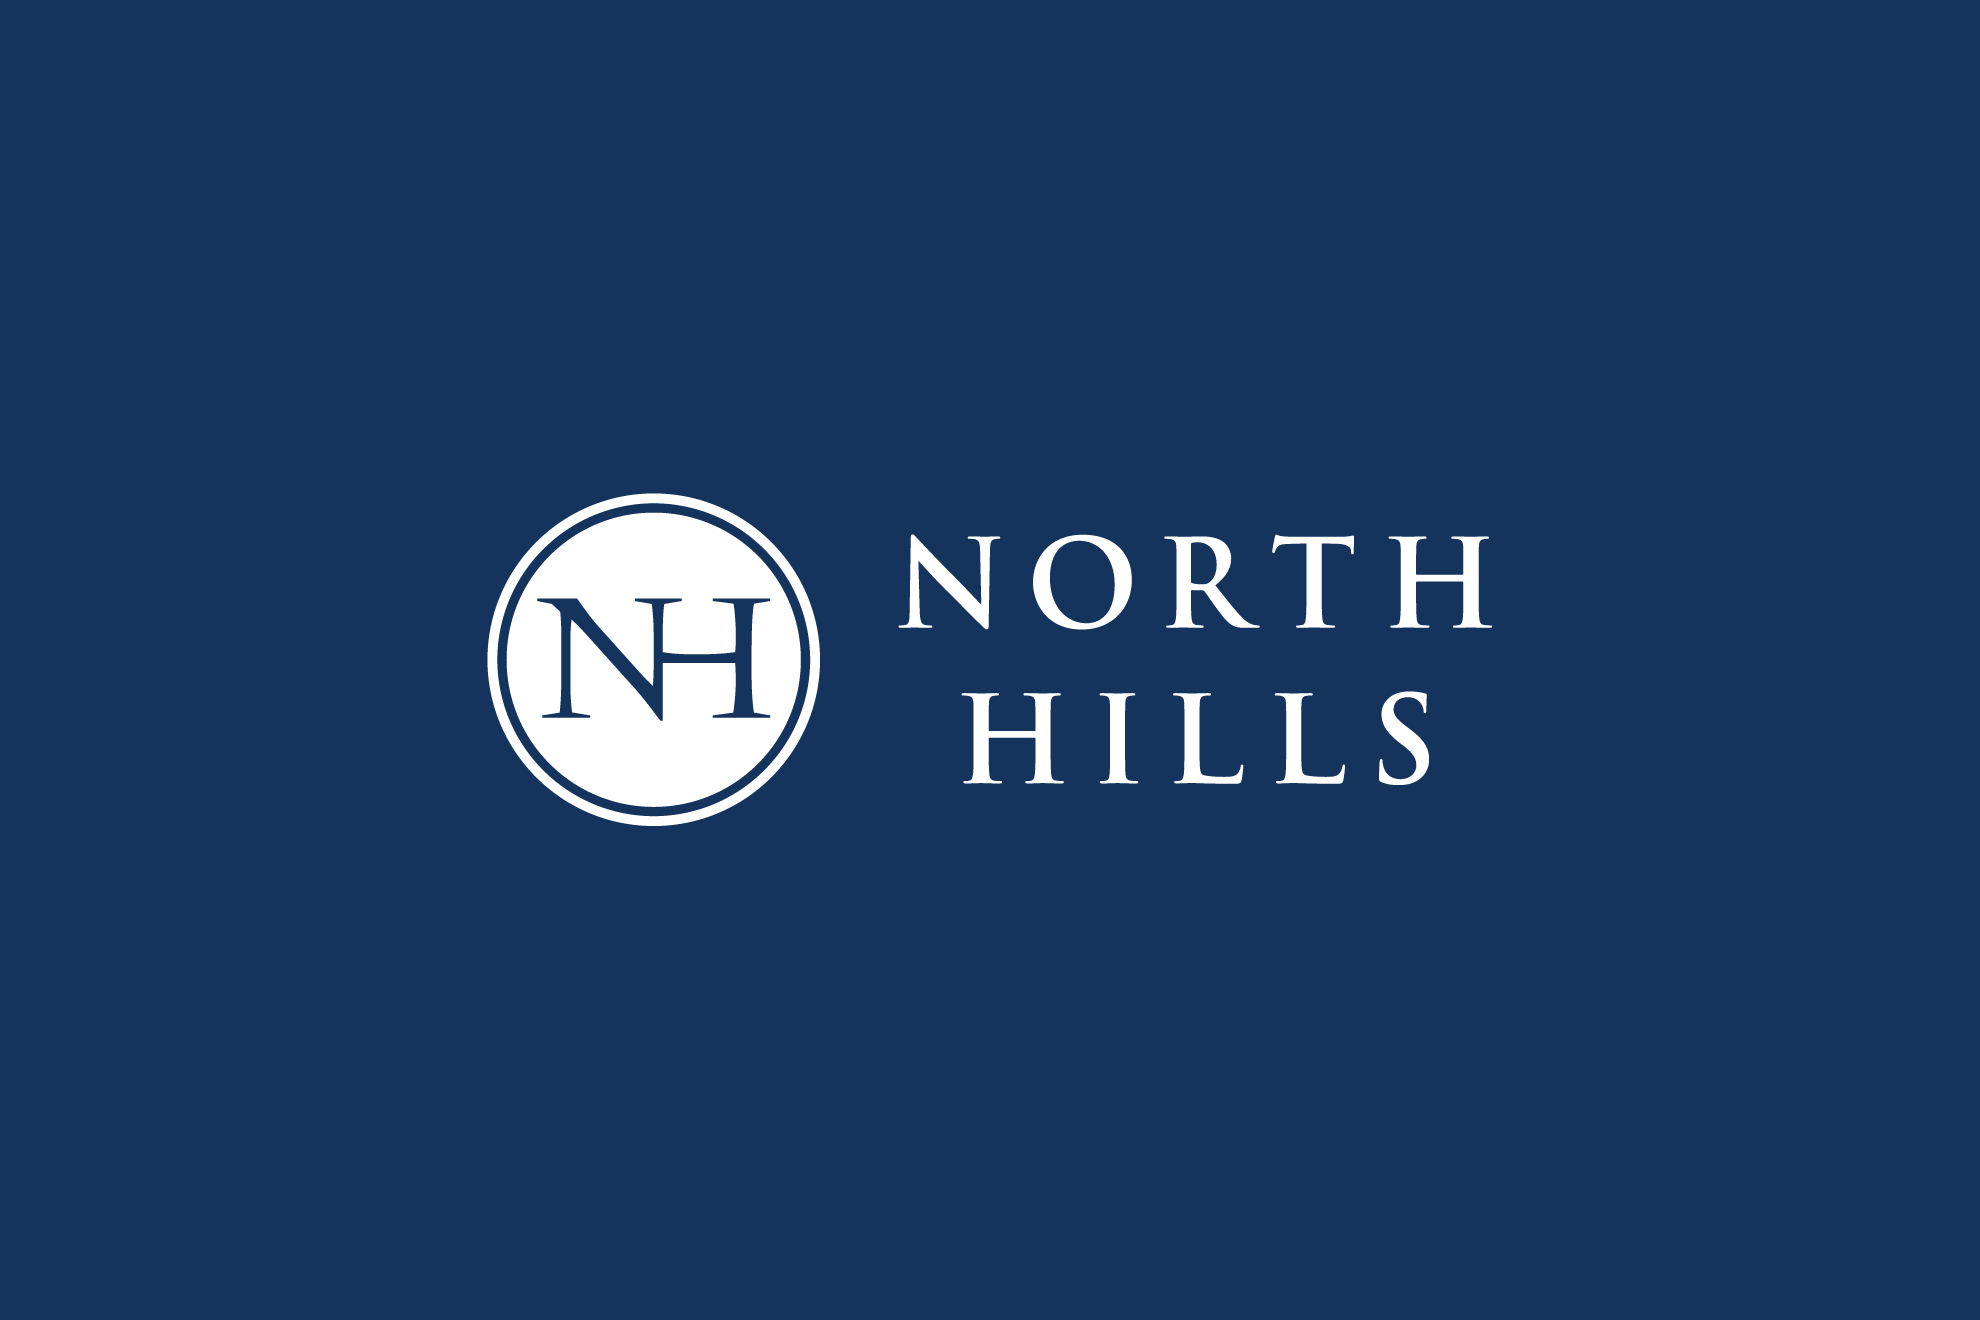 North Hills